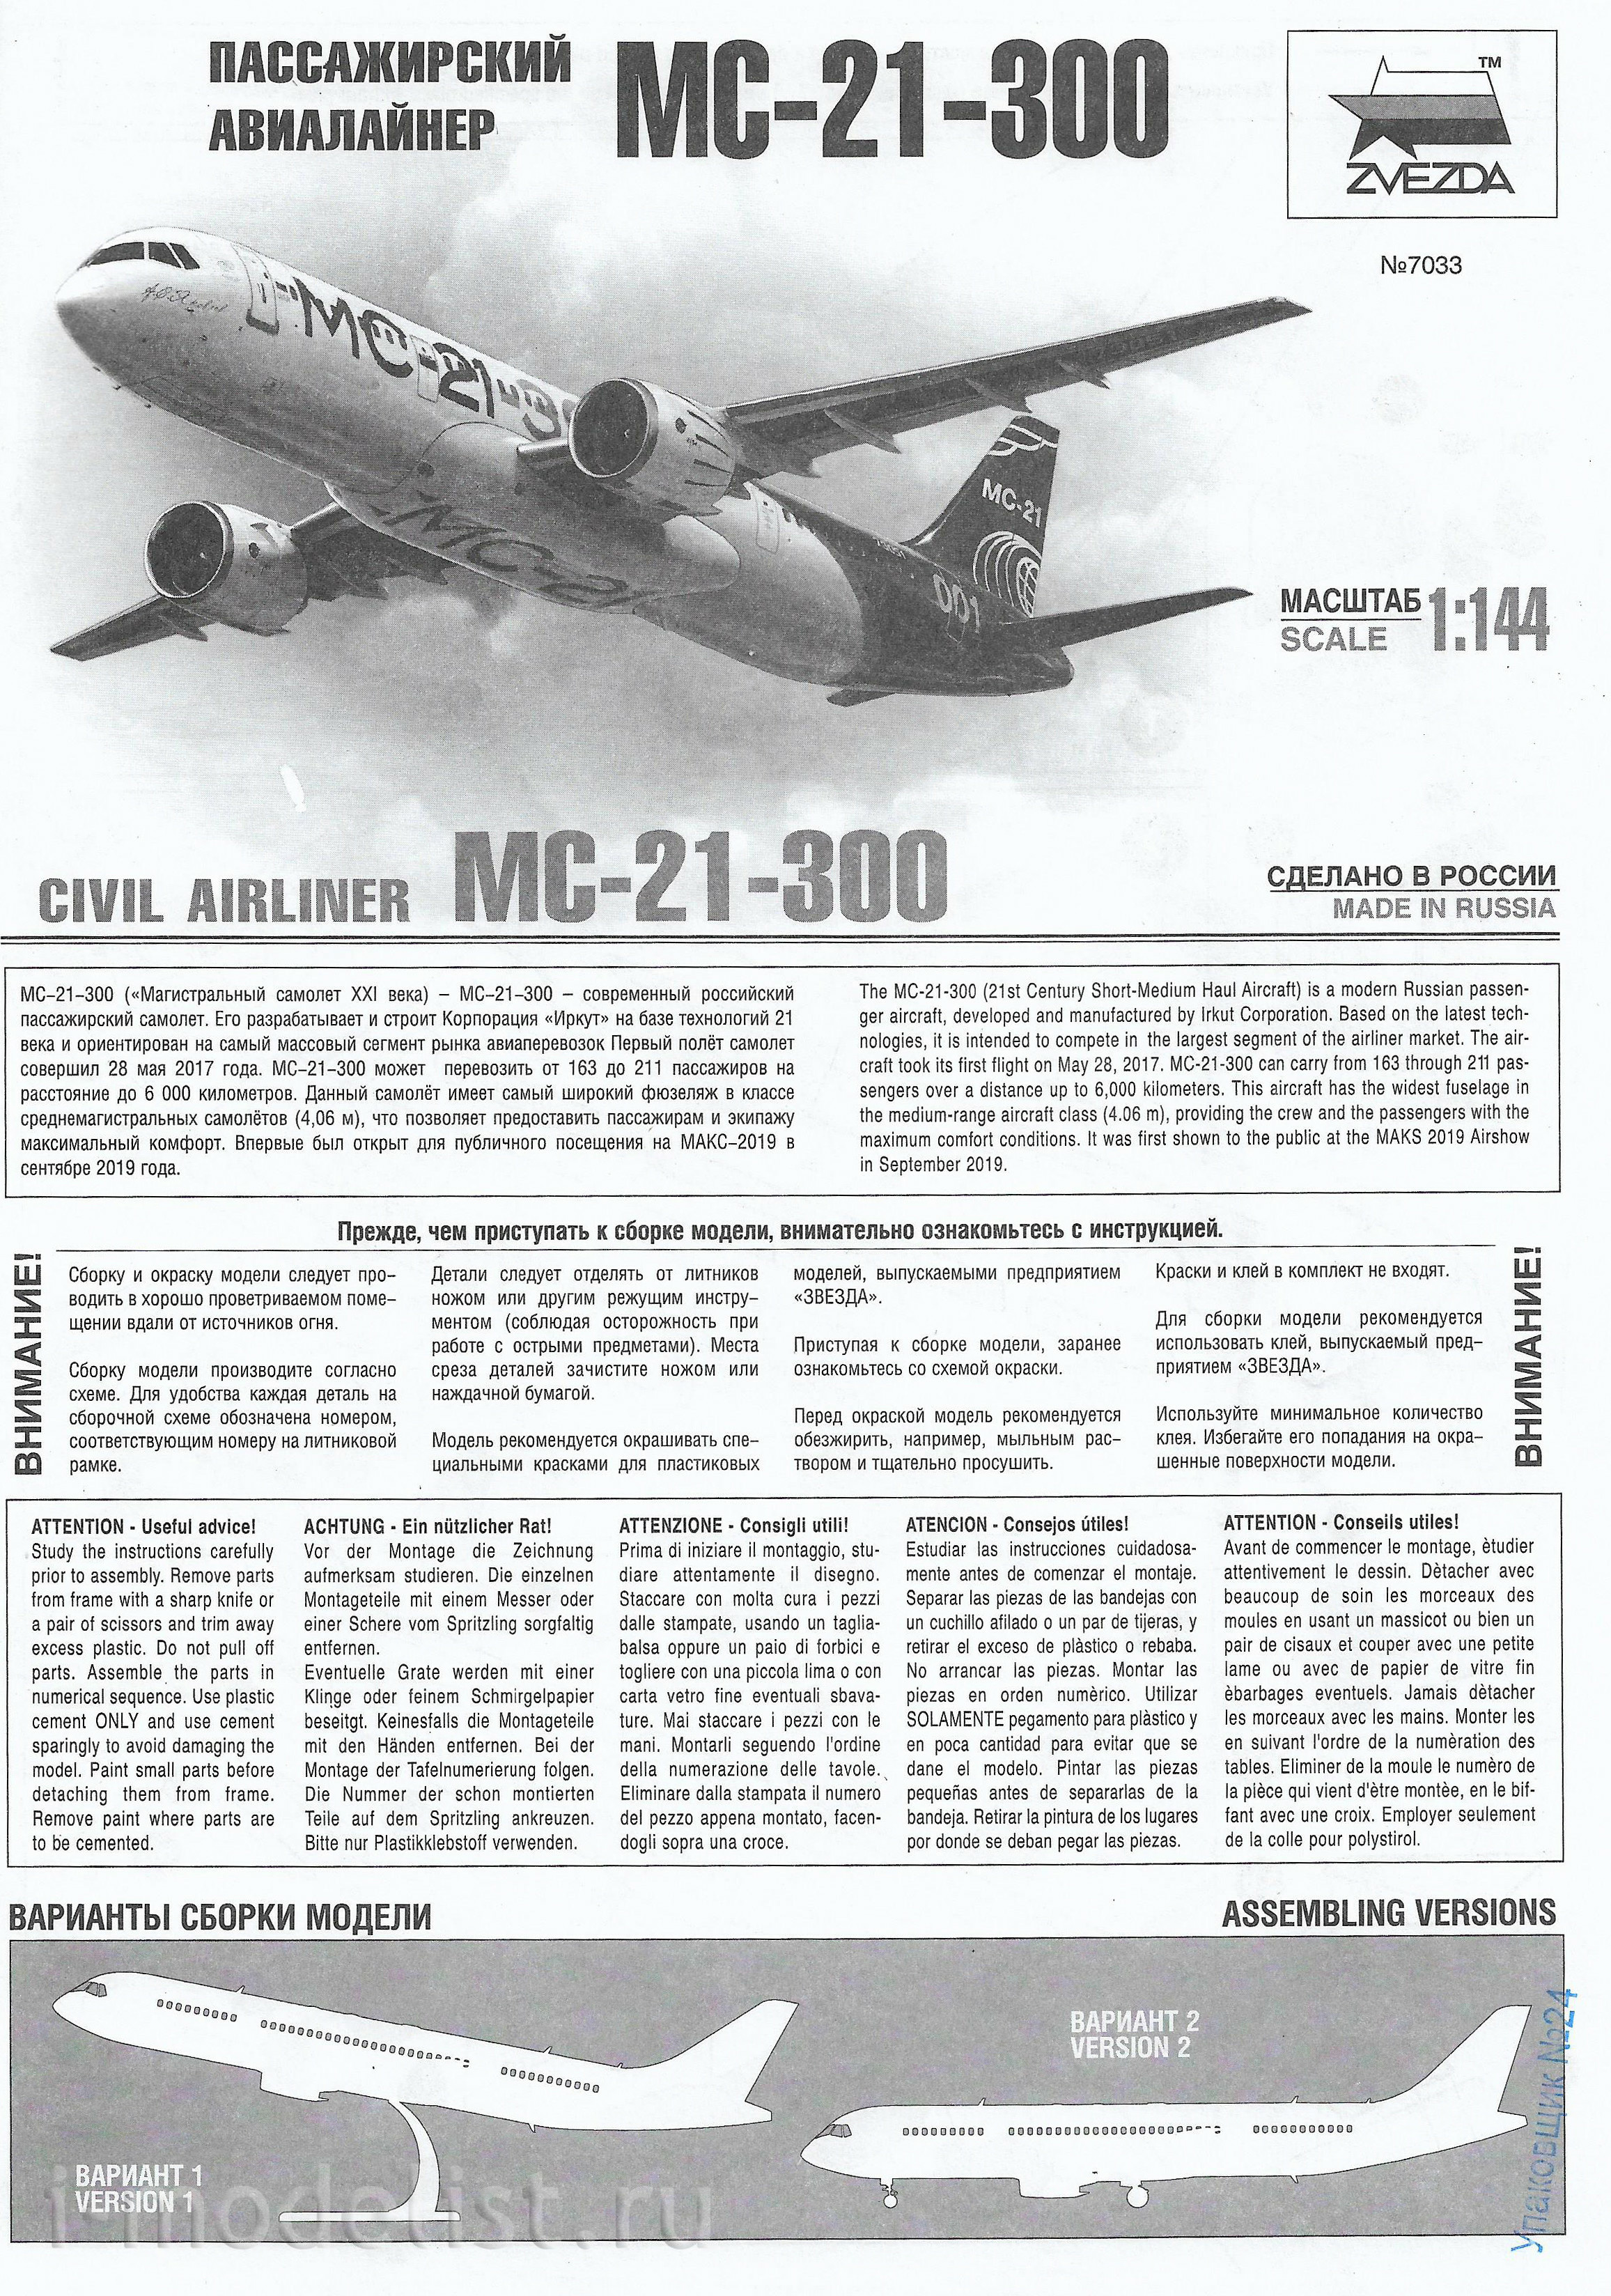 7033 Zvezda 1/144 MS-21-300 Passenger airliner